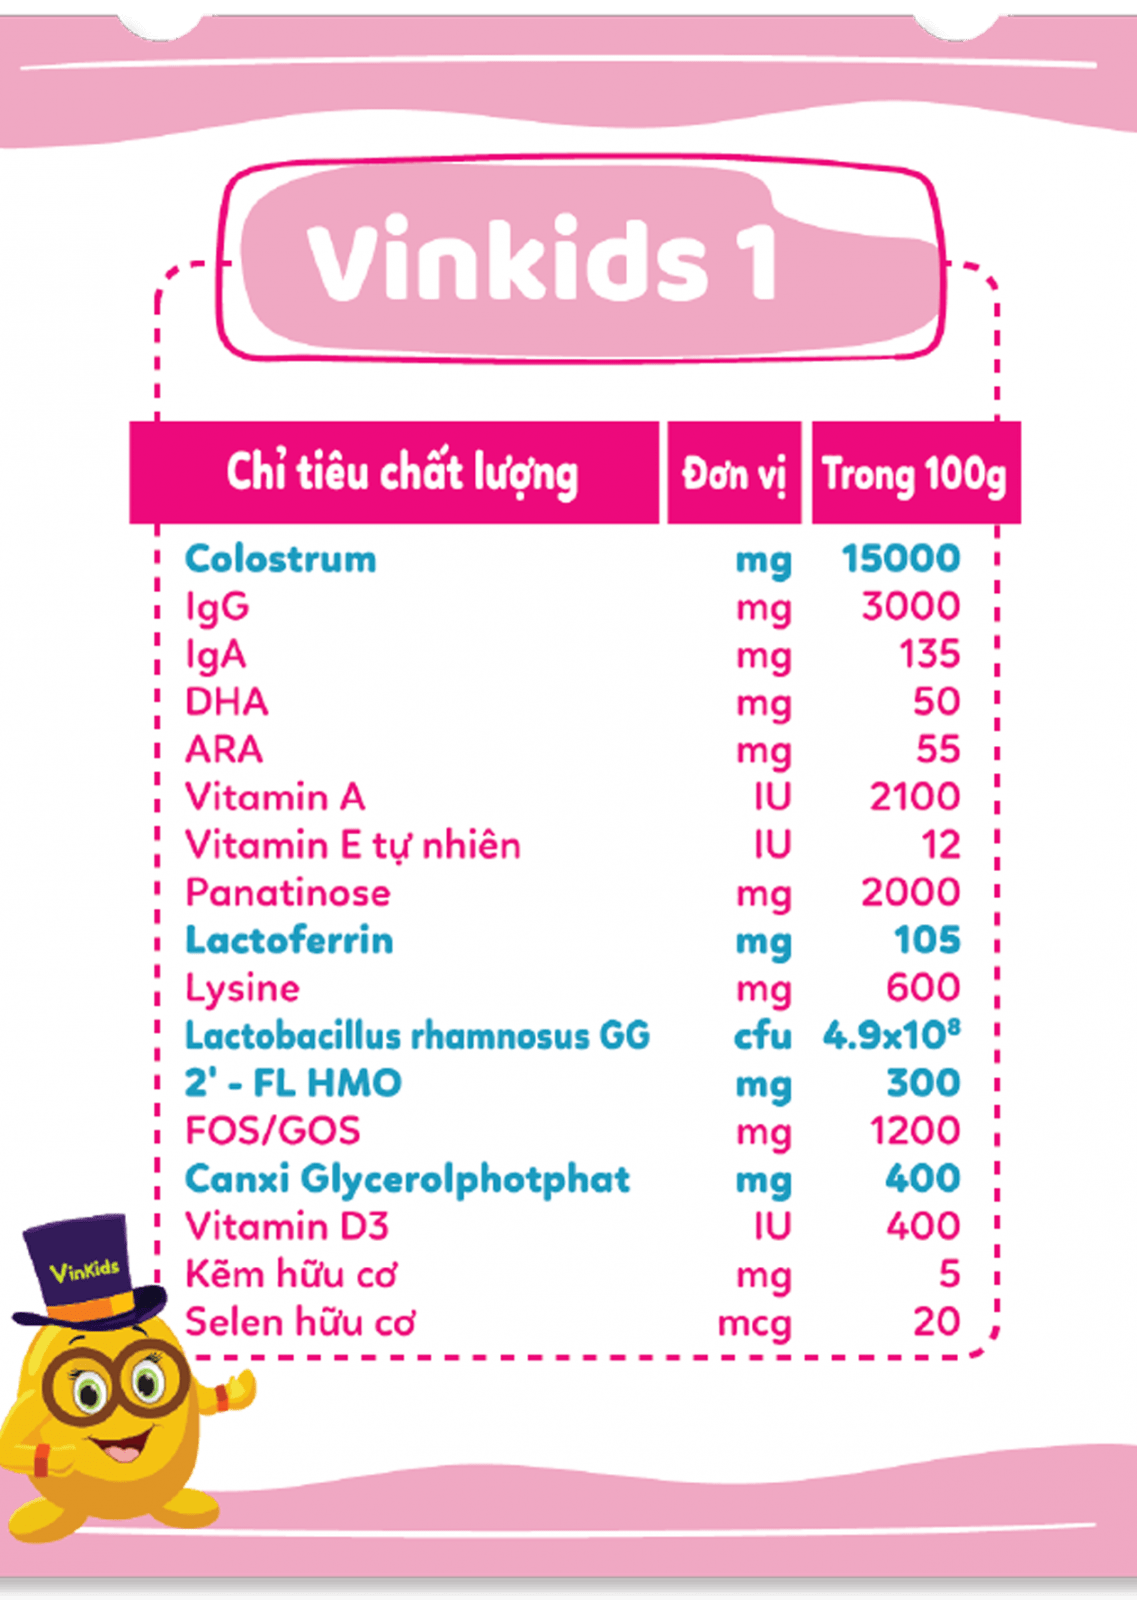 sữa non Vinkids cung cấp kháng thể tự nhiên IgG, 2’-FL HMO, hệ Synbiotics và các vitamin, khoáng chất giúp bé tăng cường miễn dịch và tiêu hoá khoẻ mạnh